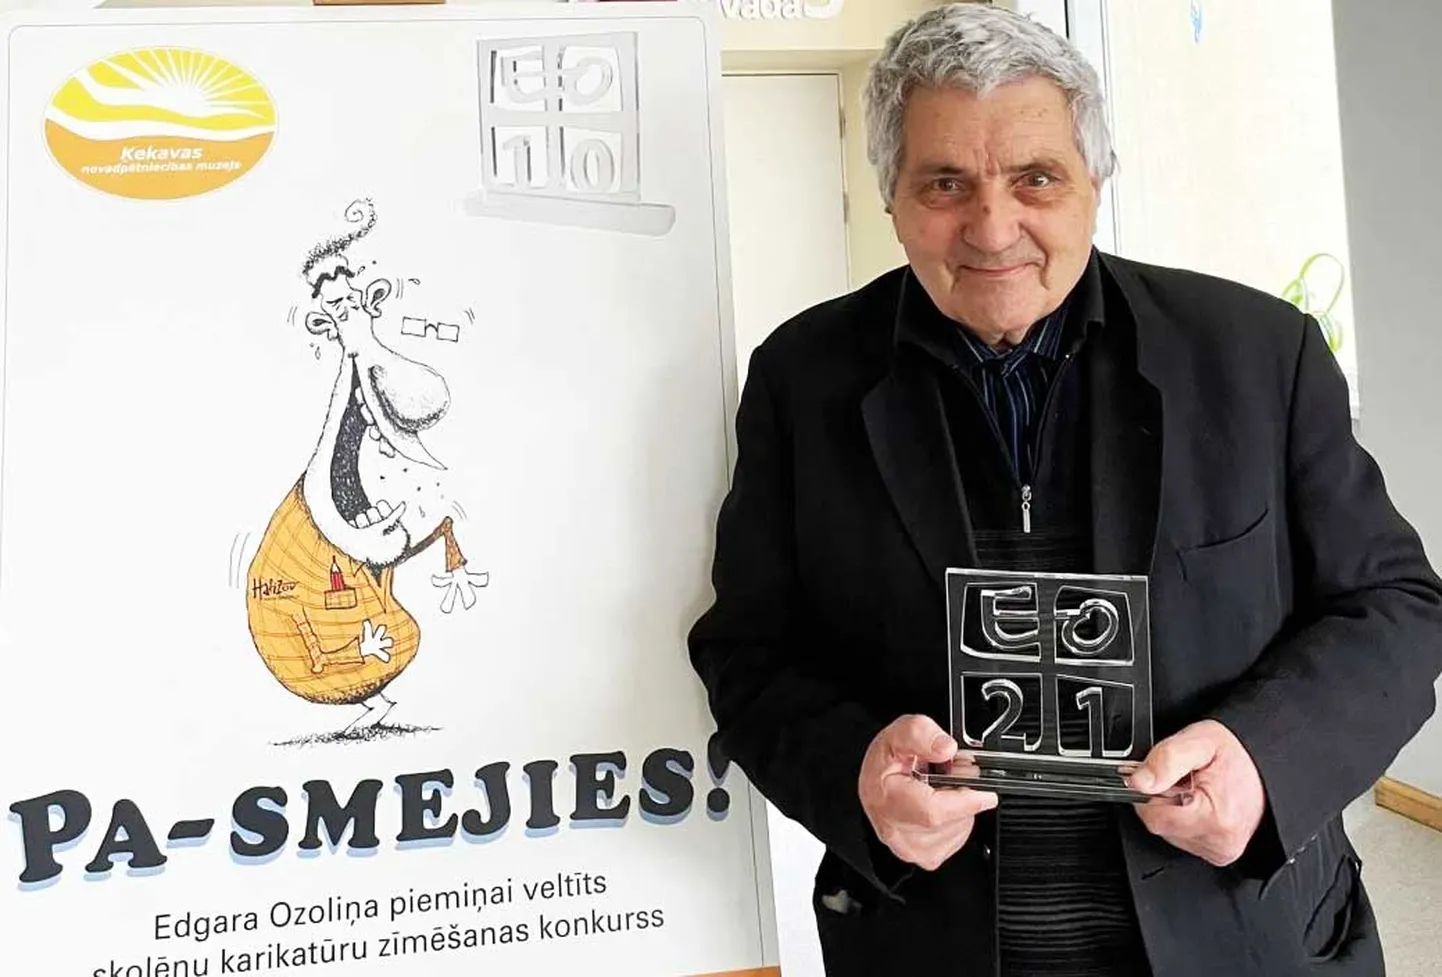 Edgara Ozoliņa piemiņas balva tiek pasniegta māksliniekam un karikatūristam Dainim Breikšam